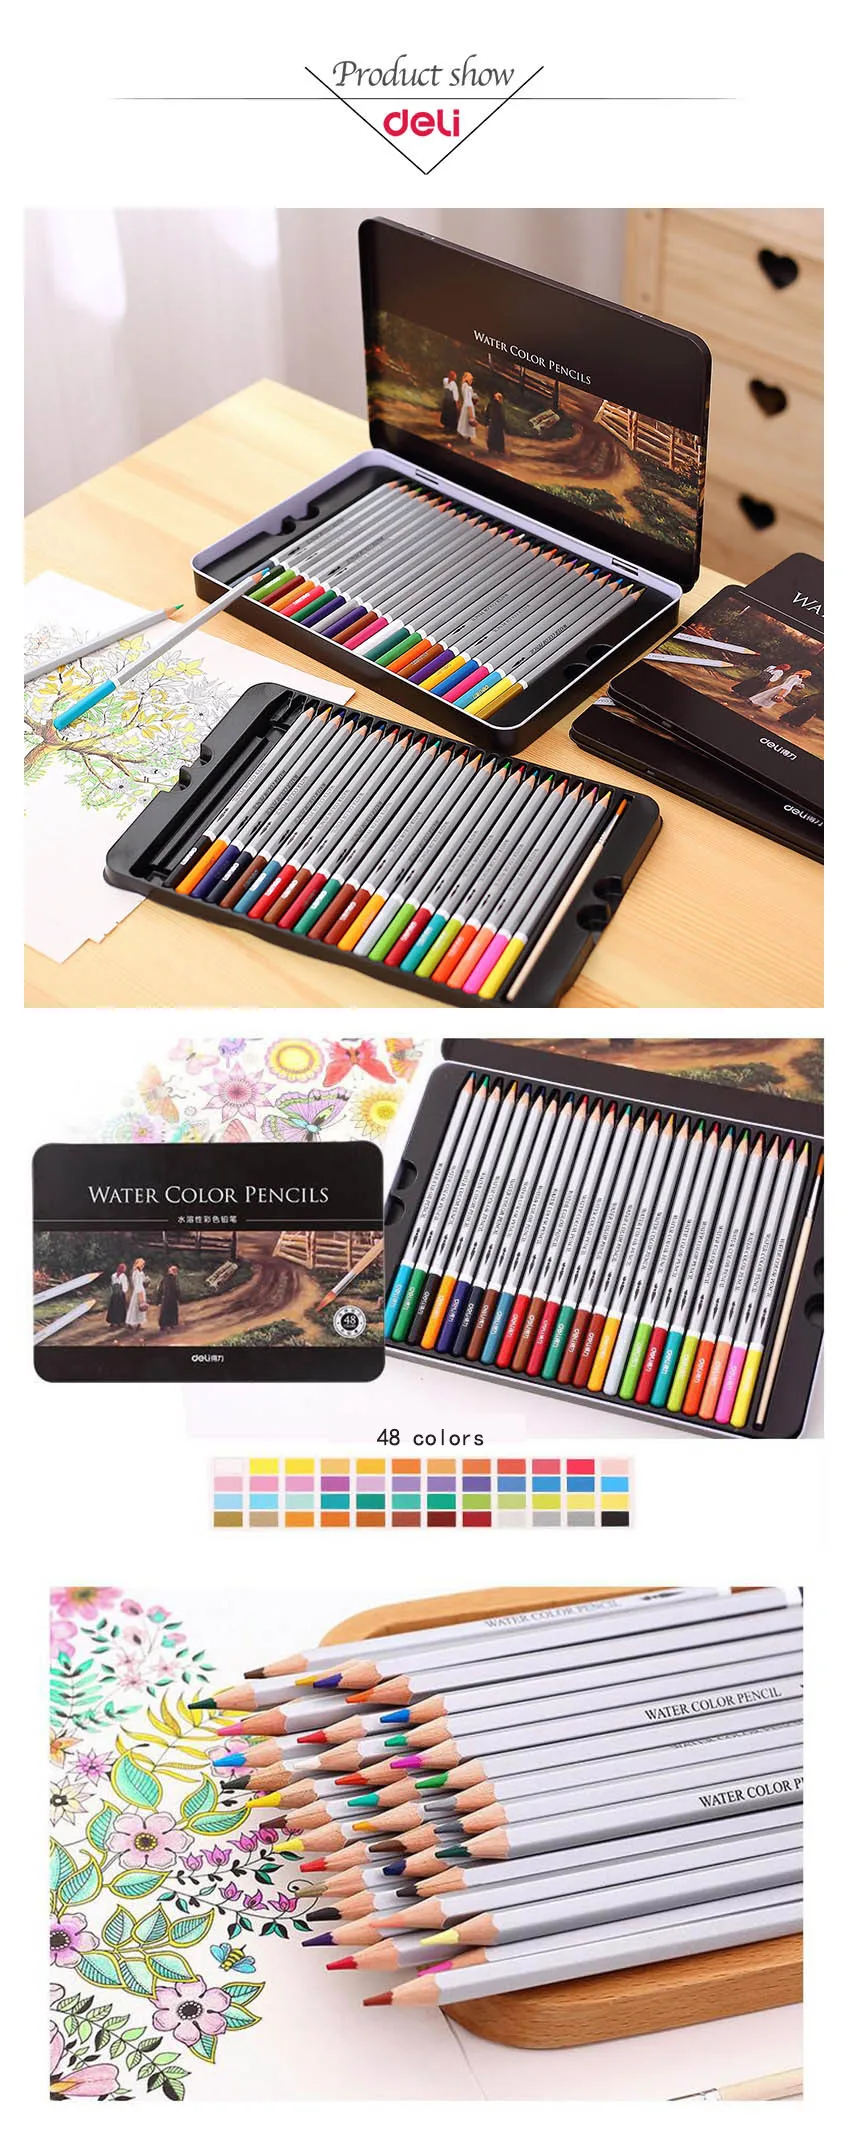 Балык Профессиональный Цвет карандаши набор для рисования 72 Цвета живопись Эскиз жестяной коробке художественная школа художника